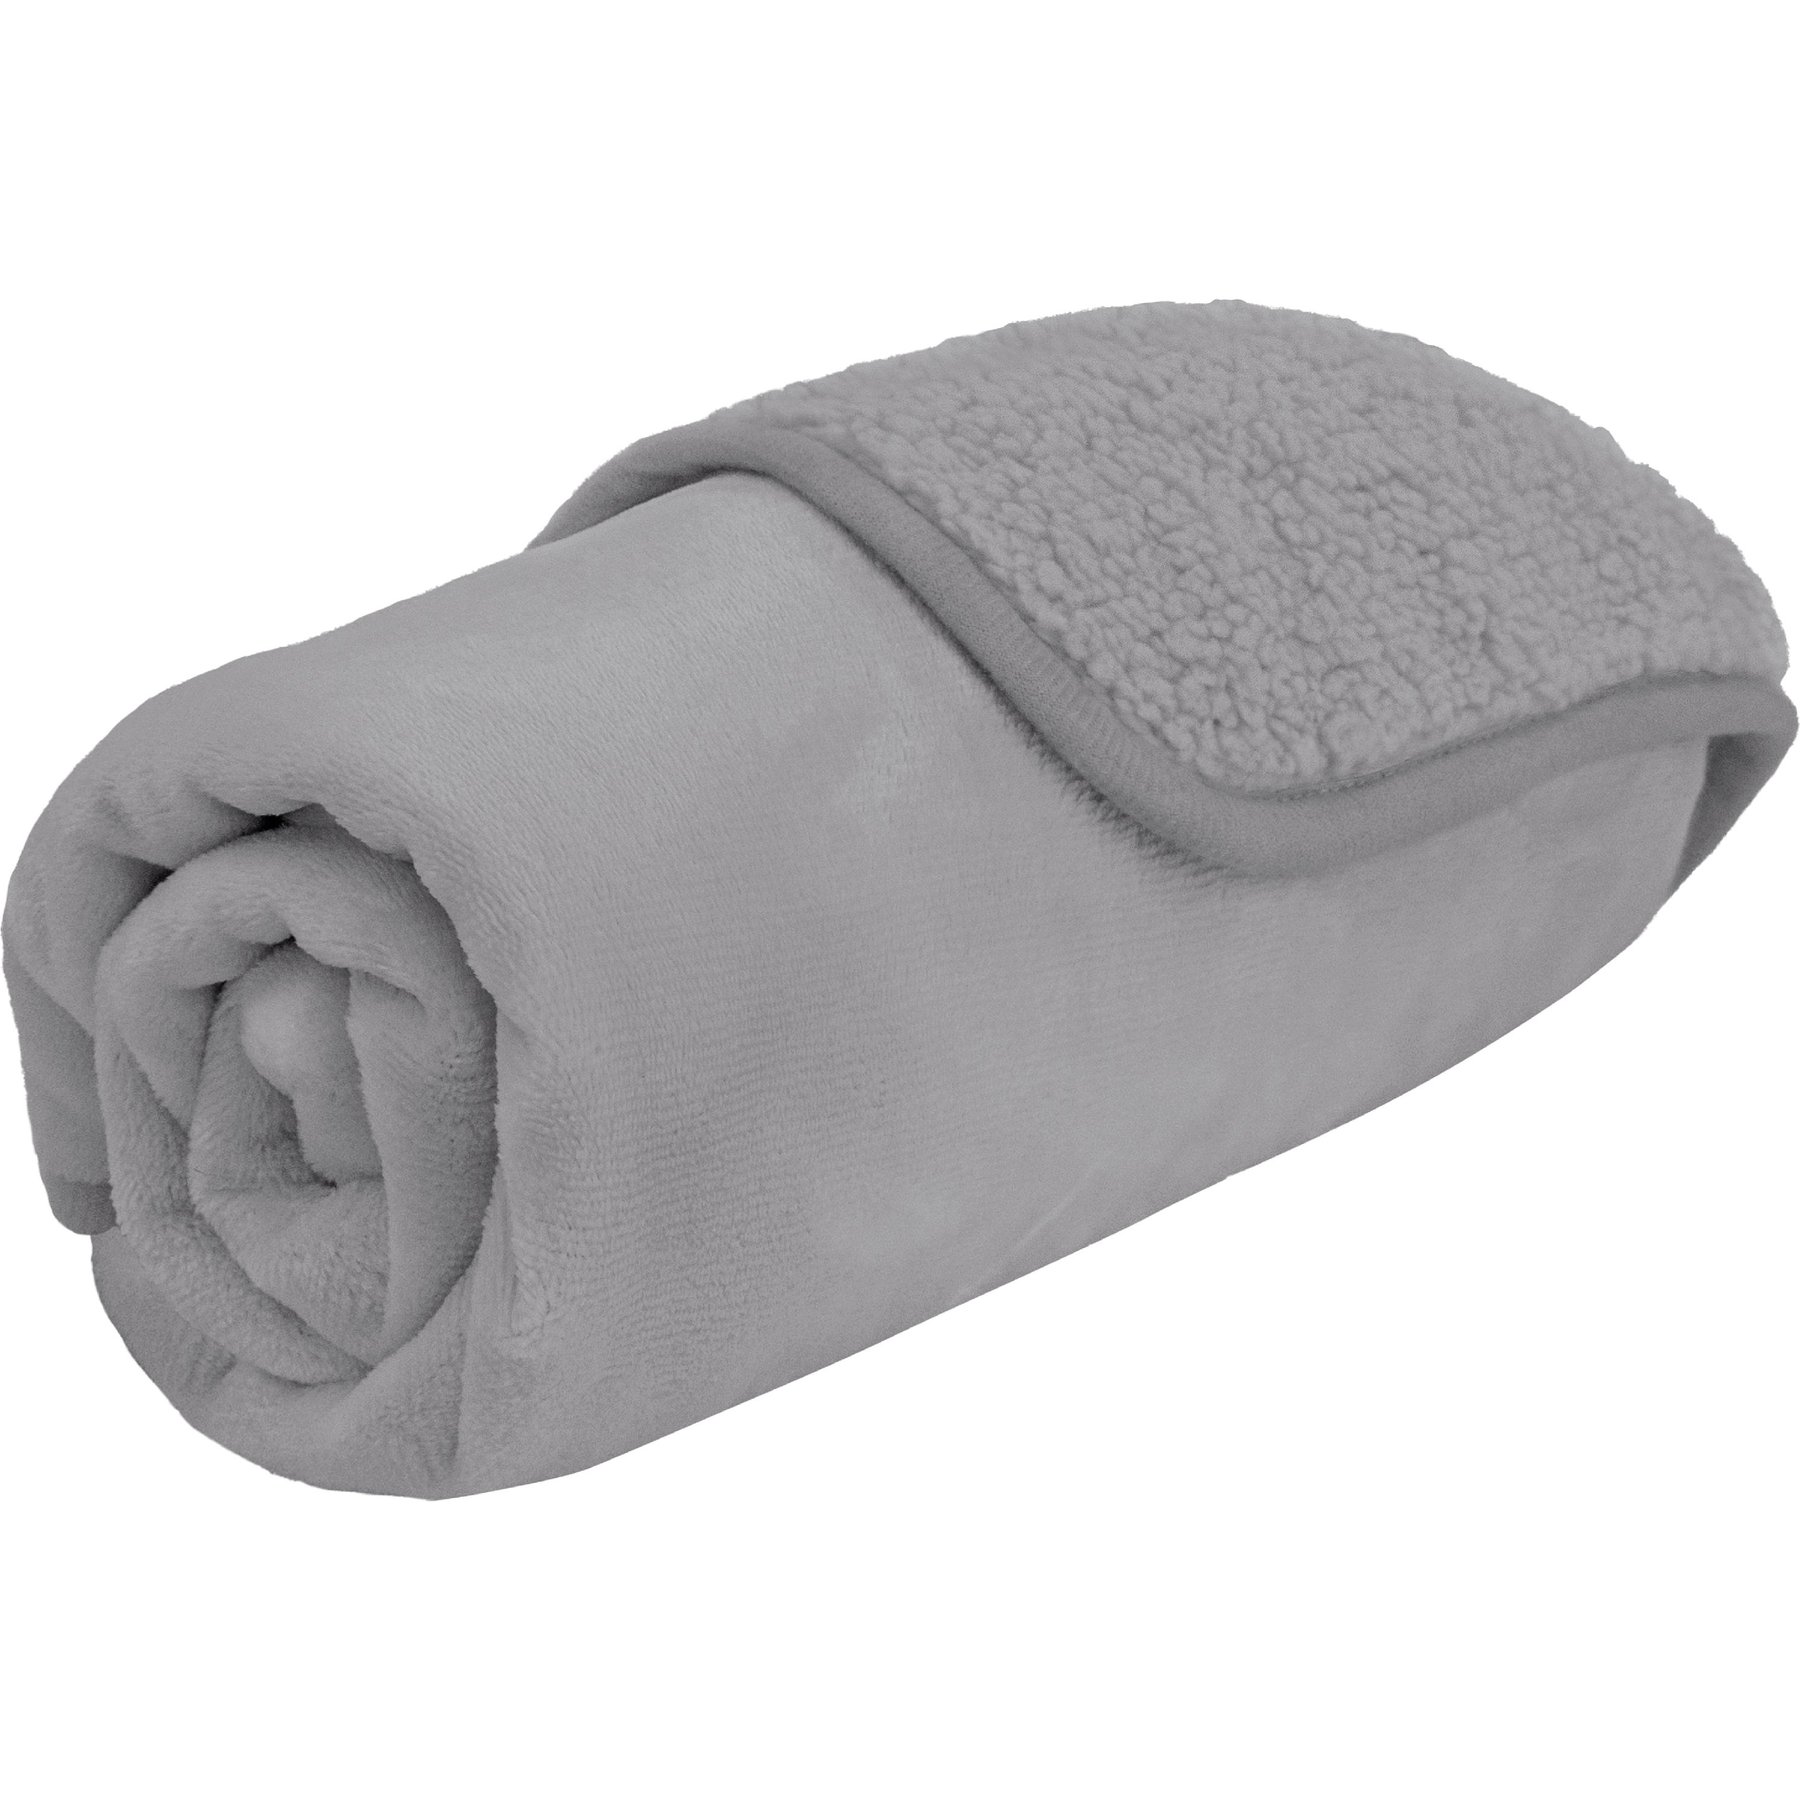 Allisandro Fluffy Premium Fleece/Microfiber Blanket & Reviews